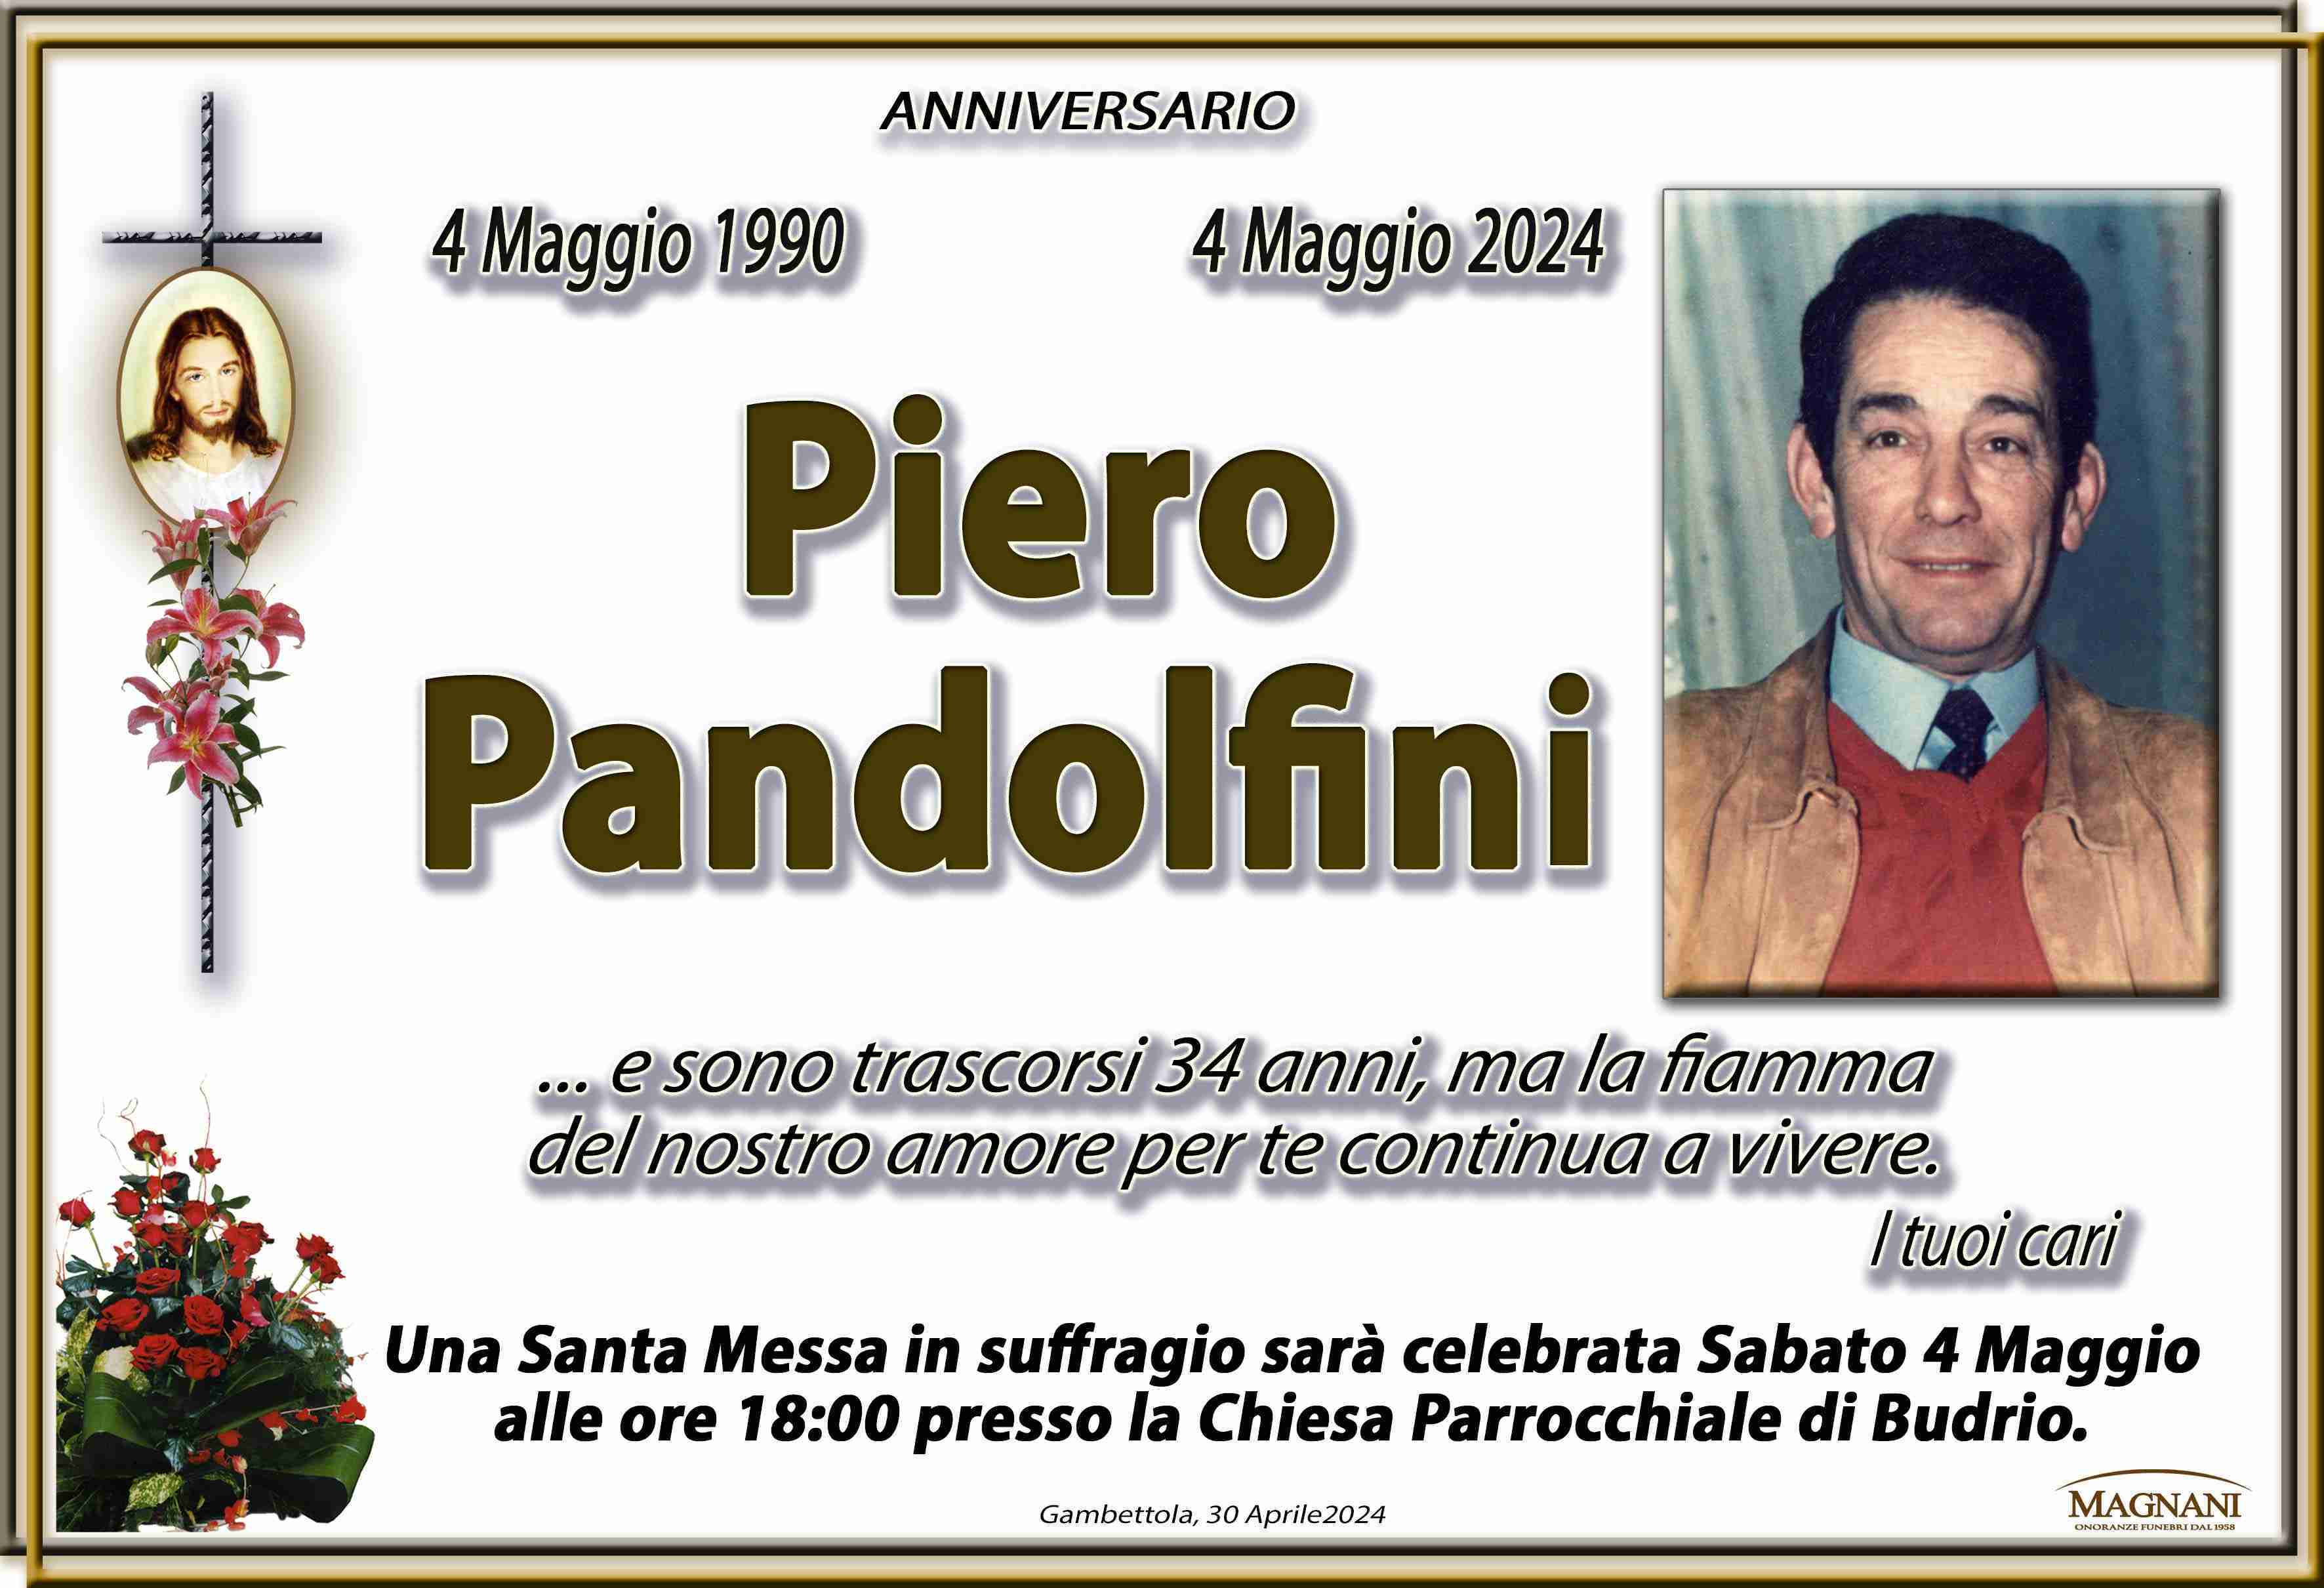 Piero Pandolfini